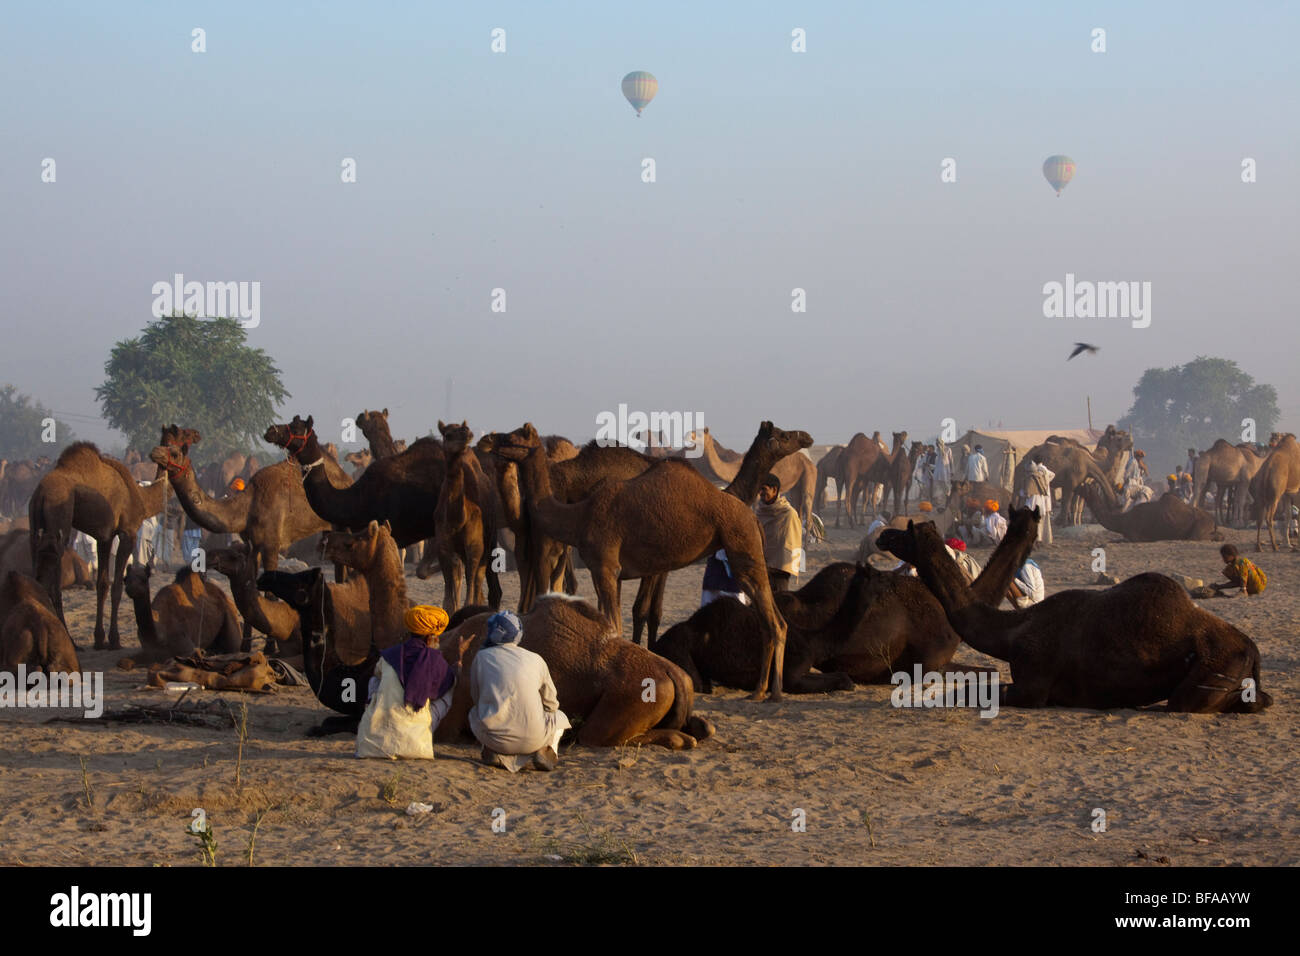 Camels and hot air balloons at the Camel Fair in Pushkar India Stock Photo